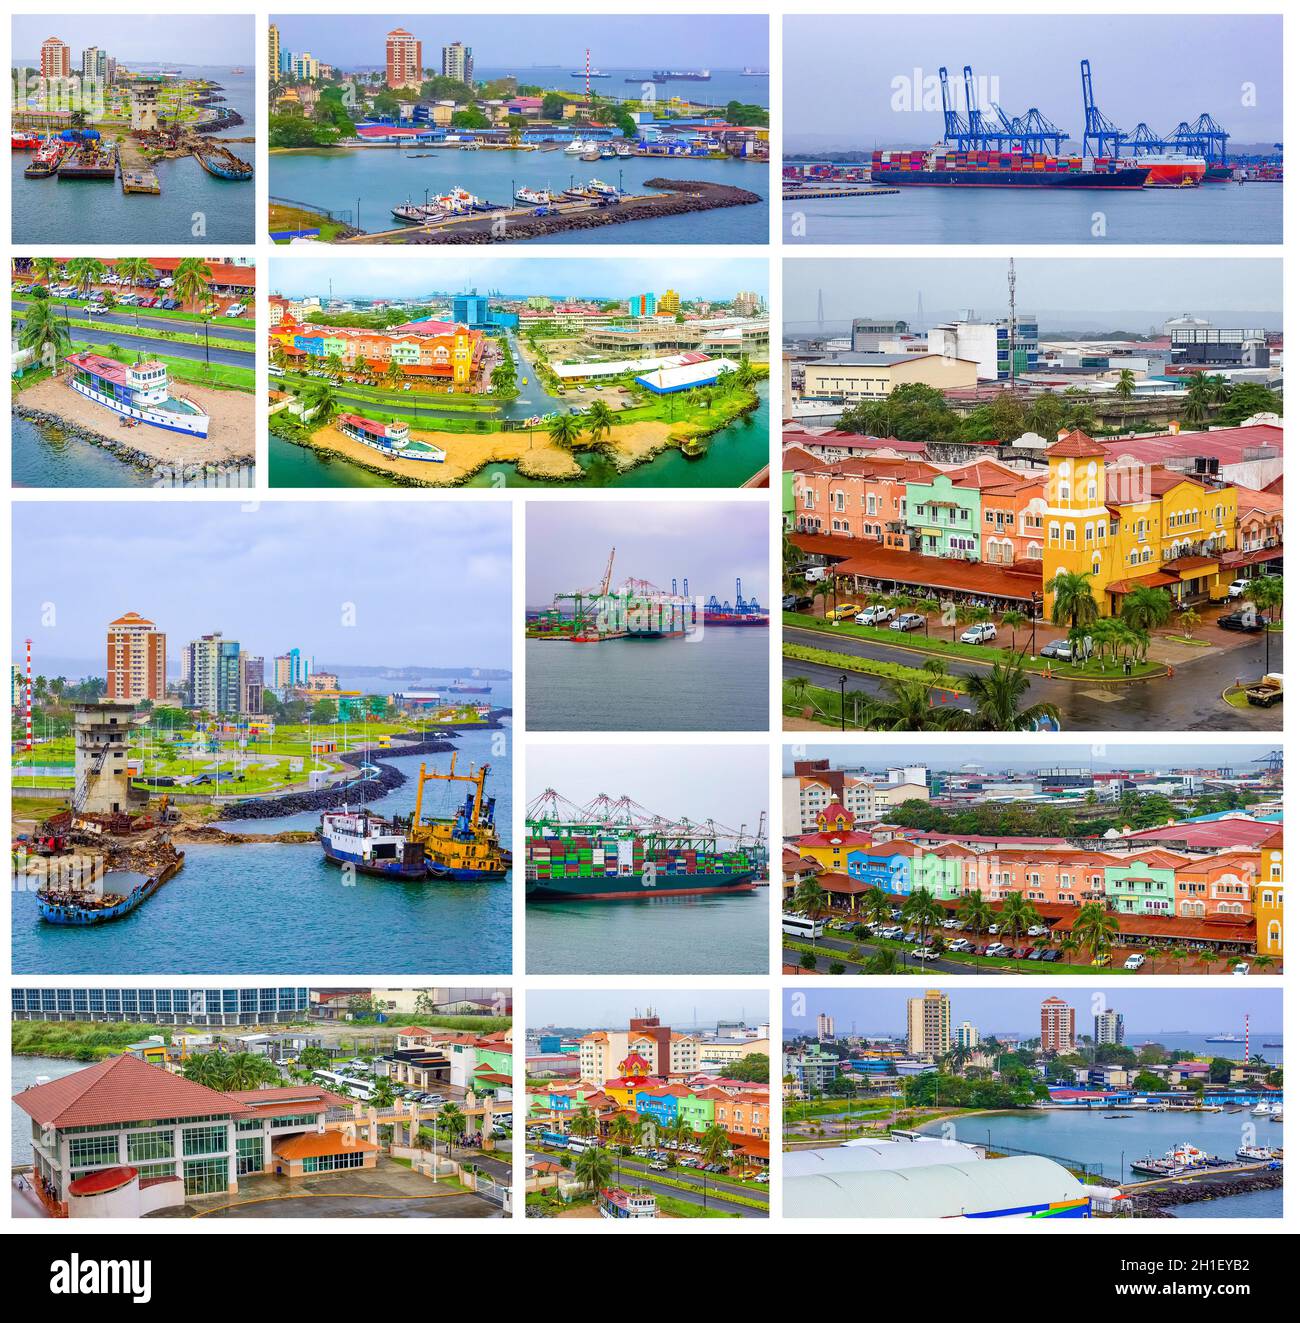 Colon ist ein Seehafen an der Karibikküste von Panama. Die Stadt liegt in der Nähe des karibischen Meereingangs zum Panamakanal. Collage Stockfoto